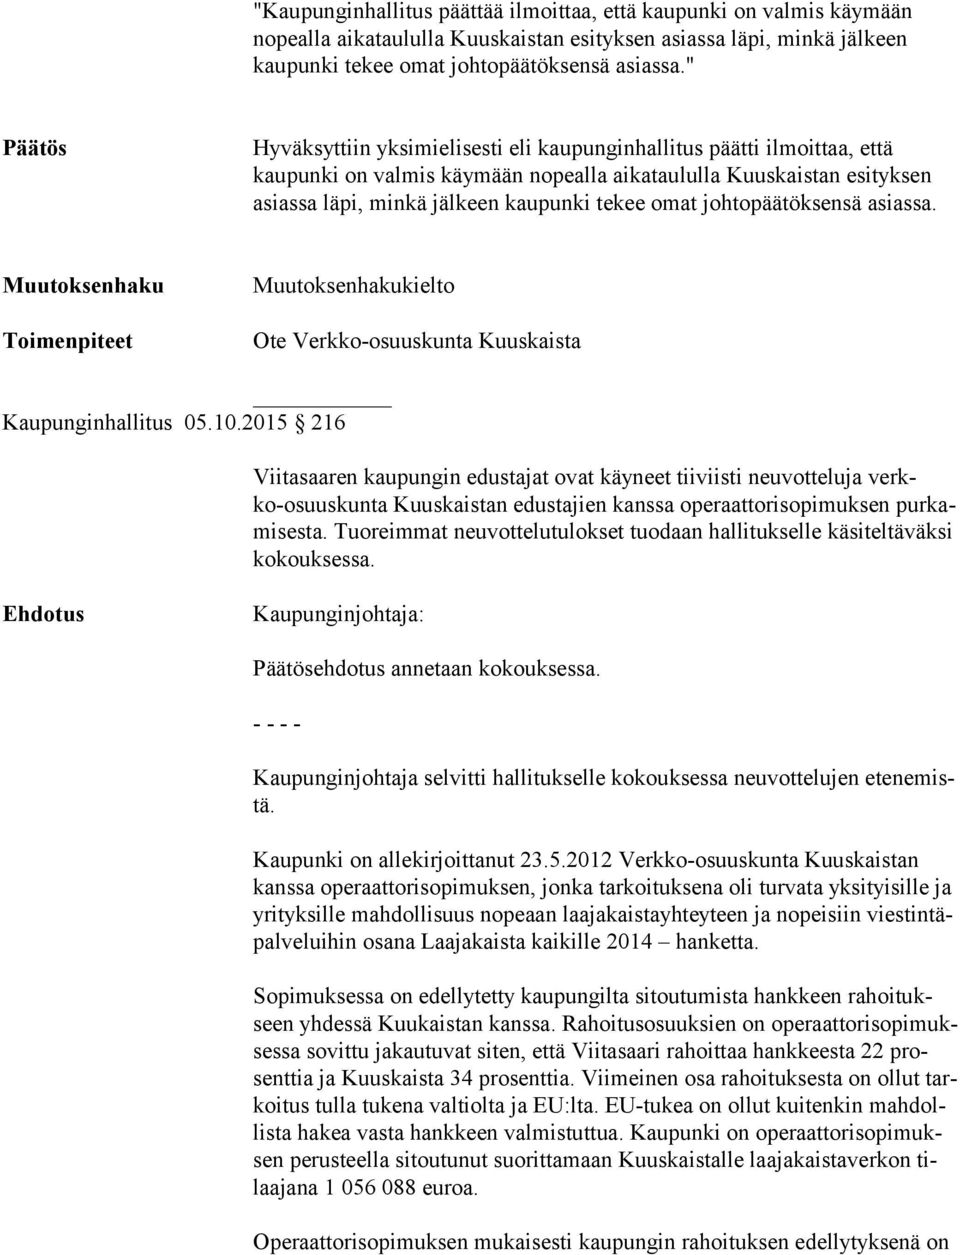 johtopäätöksensä asiassa. kielto Ote Verkko-osuuskunta Kuuskaista Kaupunginhallitus 05.10.